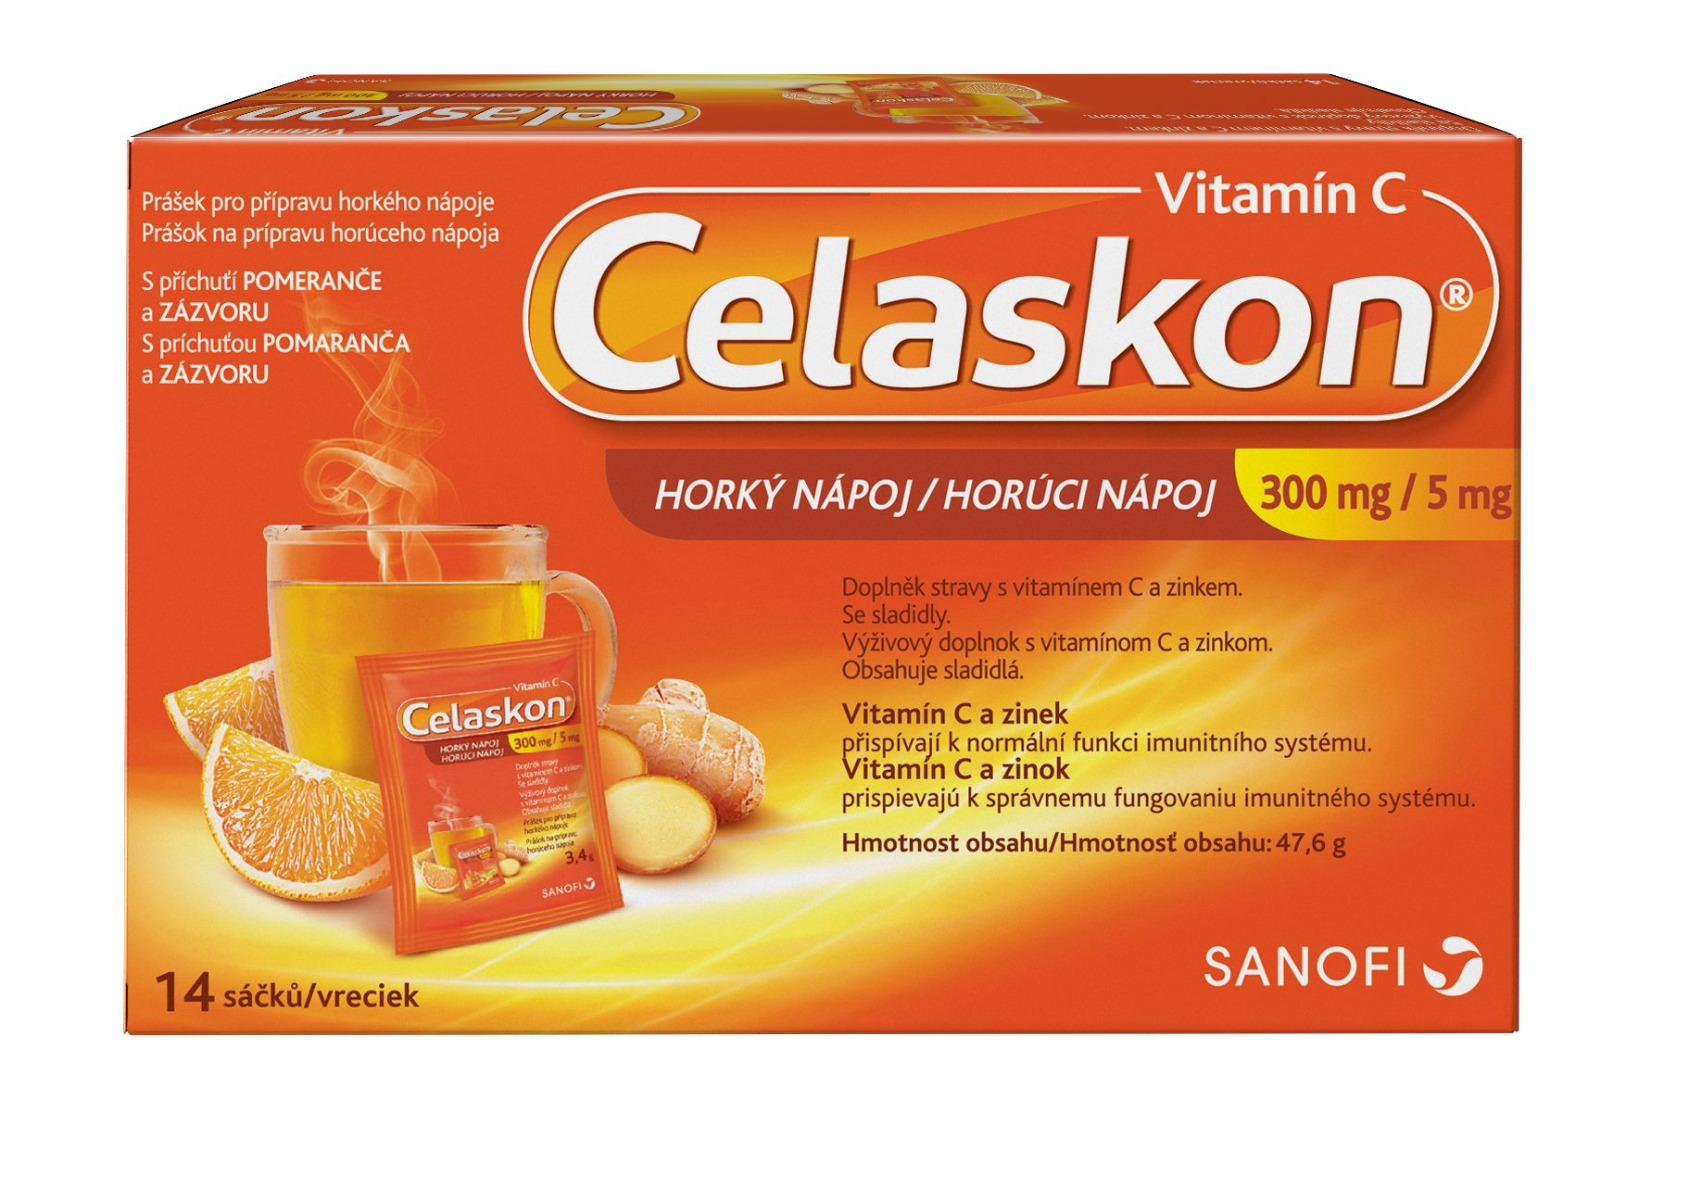 Celaskon Vitamin C 300 mg + Zinek 5 mg horký nápoj 14 sáčků Celaskon